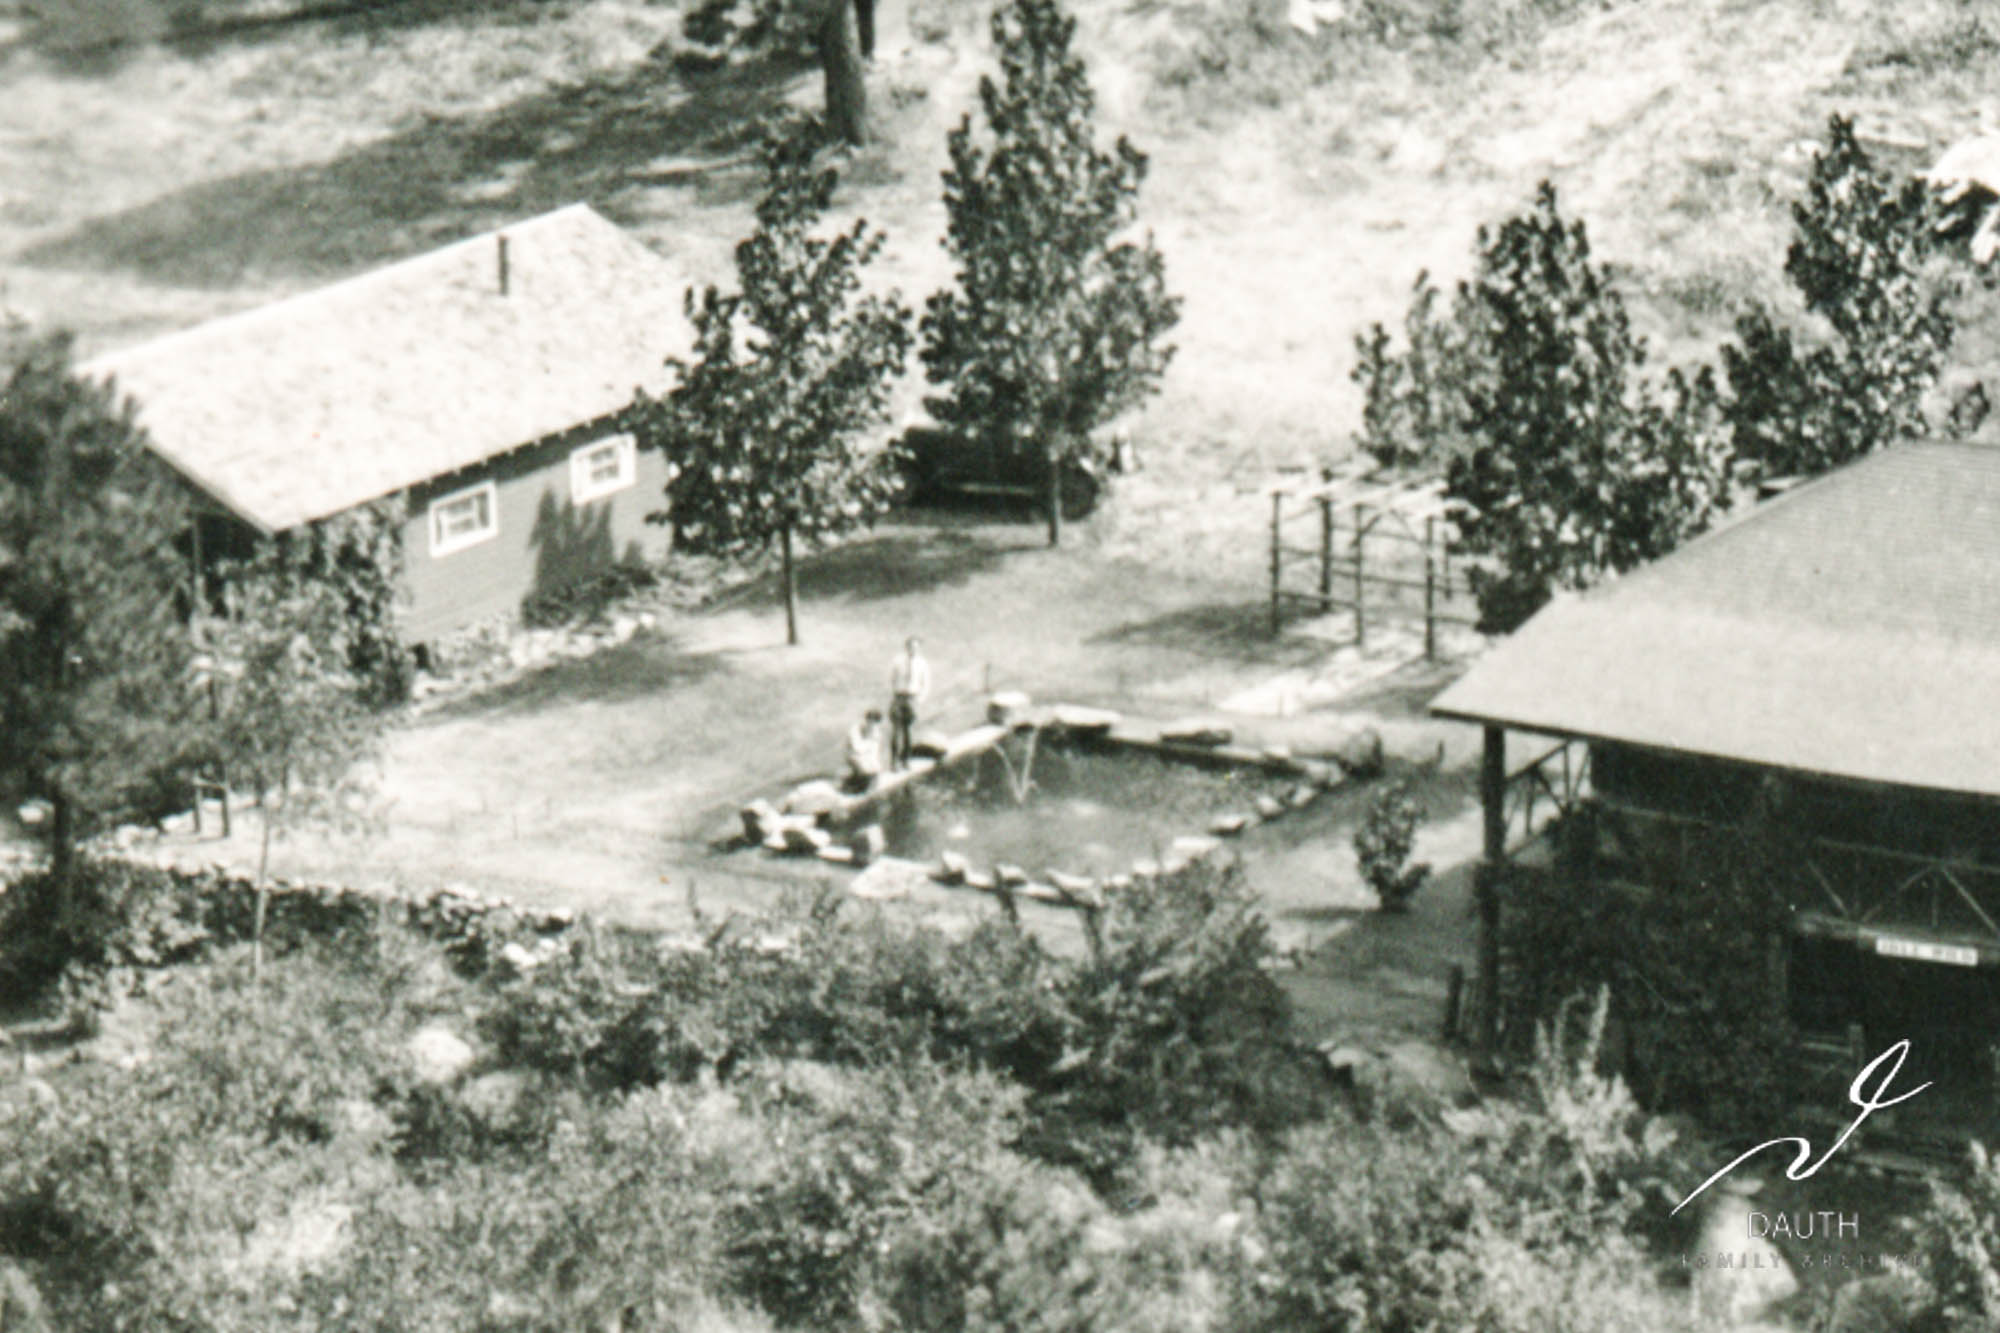 Idlewild Lodge - idlewildlodge.github.io - Circa 1928 - Idlewild Lodge - Looking south at Idlewild